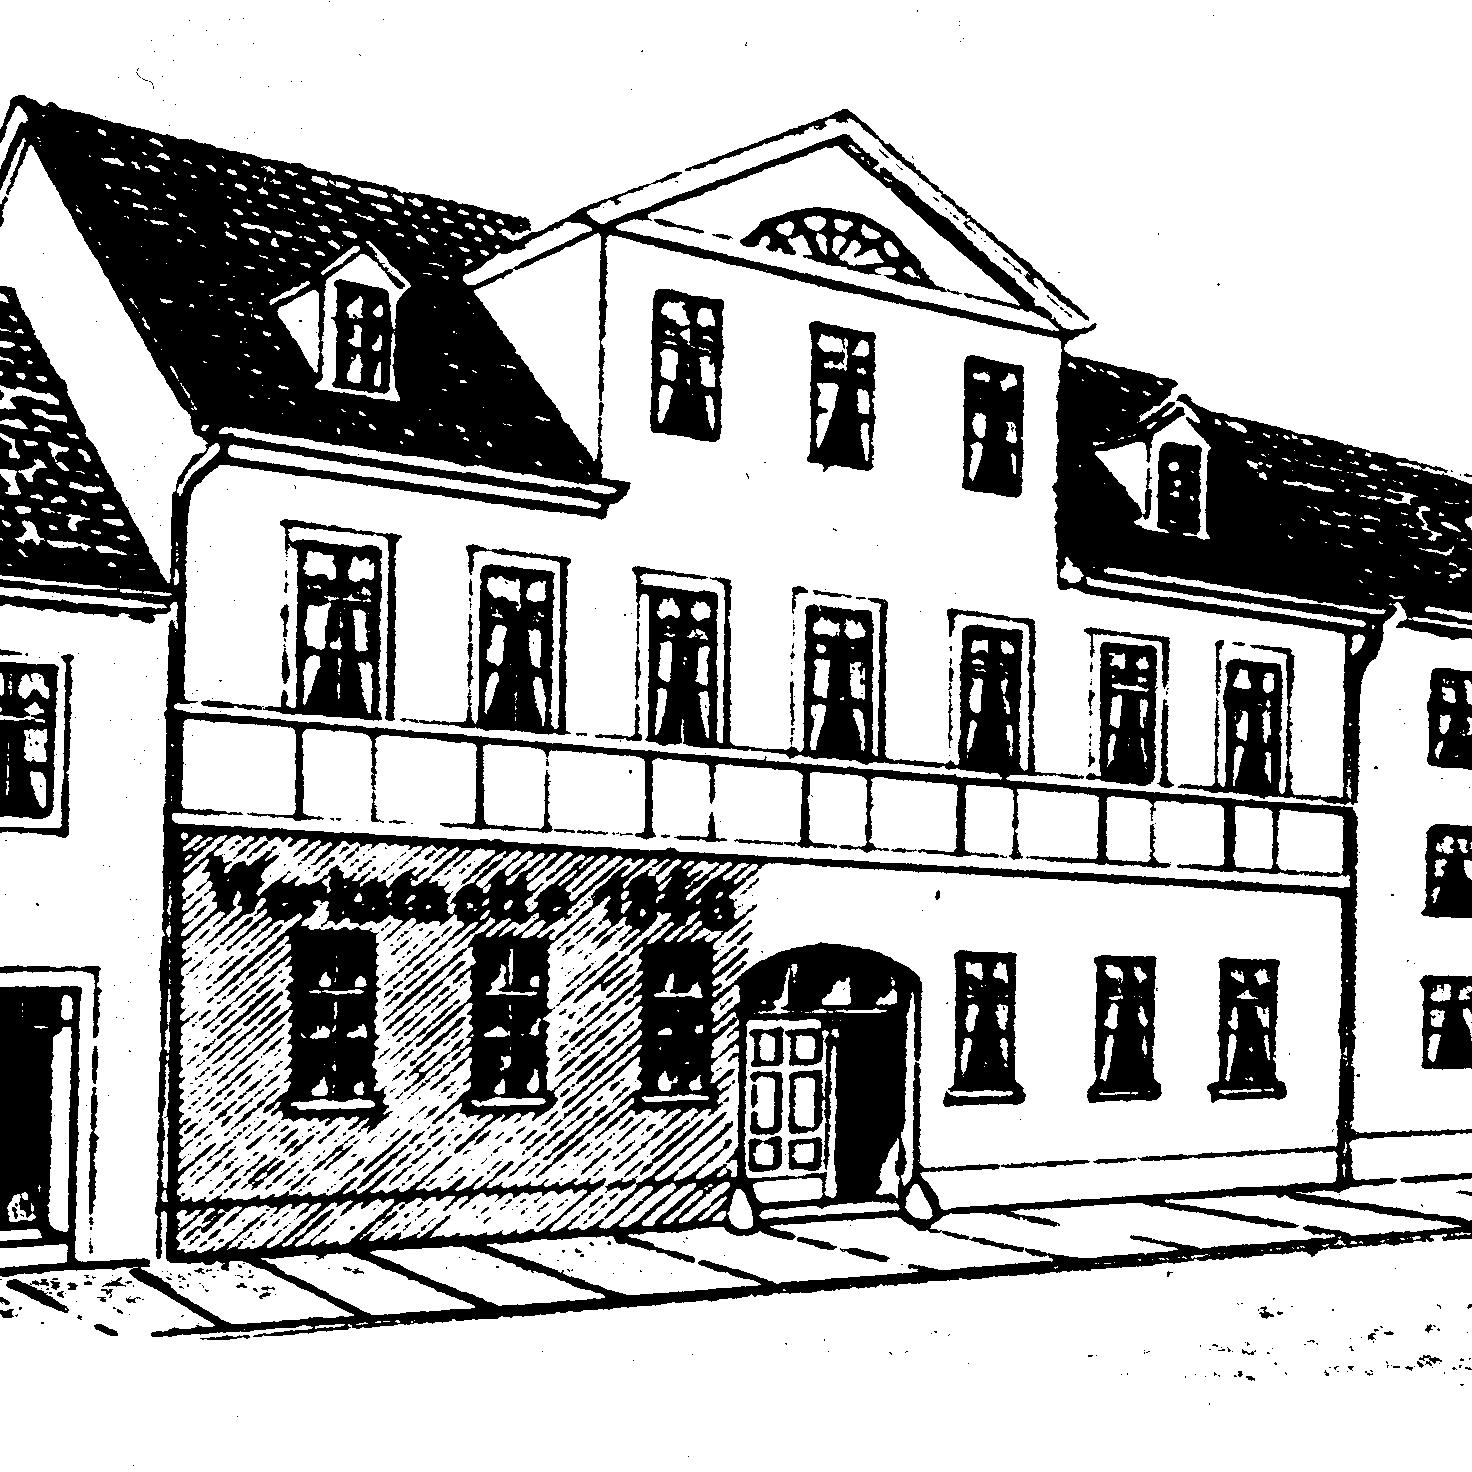 カール・ツァイスがイェーナで設立した最初の工場